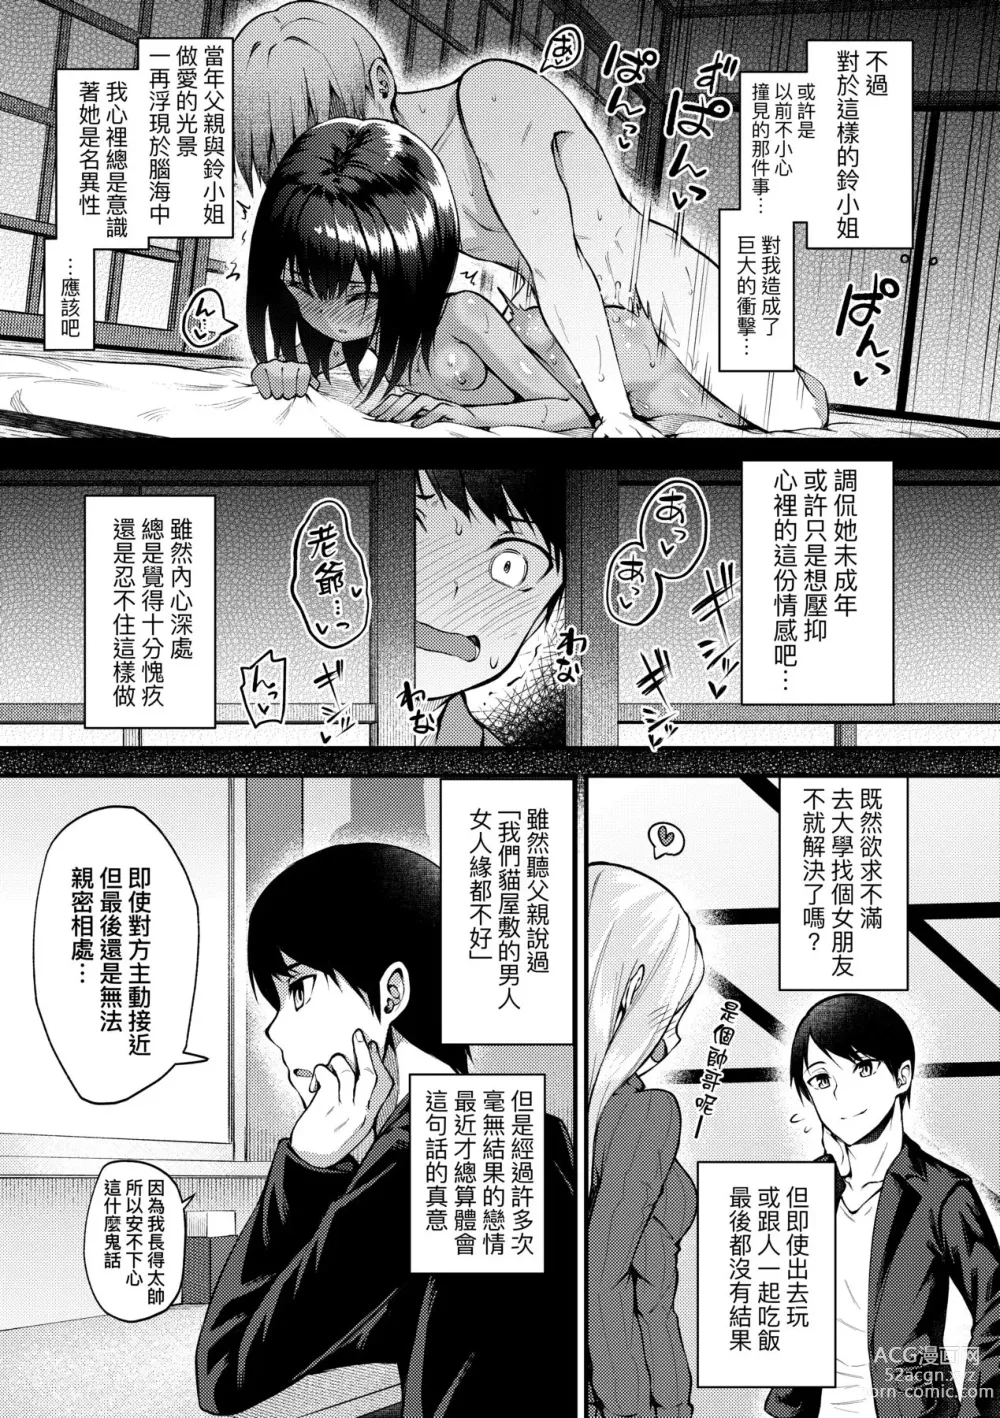 Page 8 of manga Chojyu Giga (decensored)